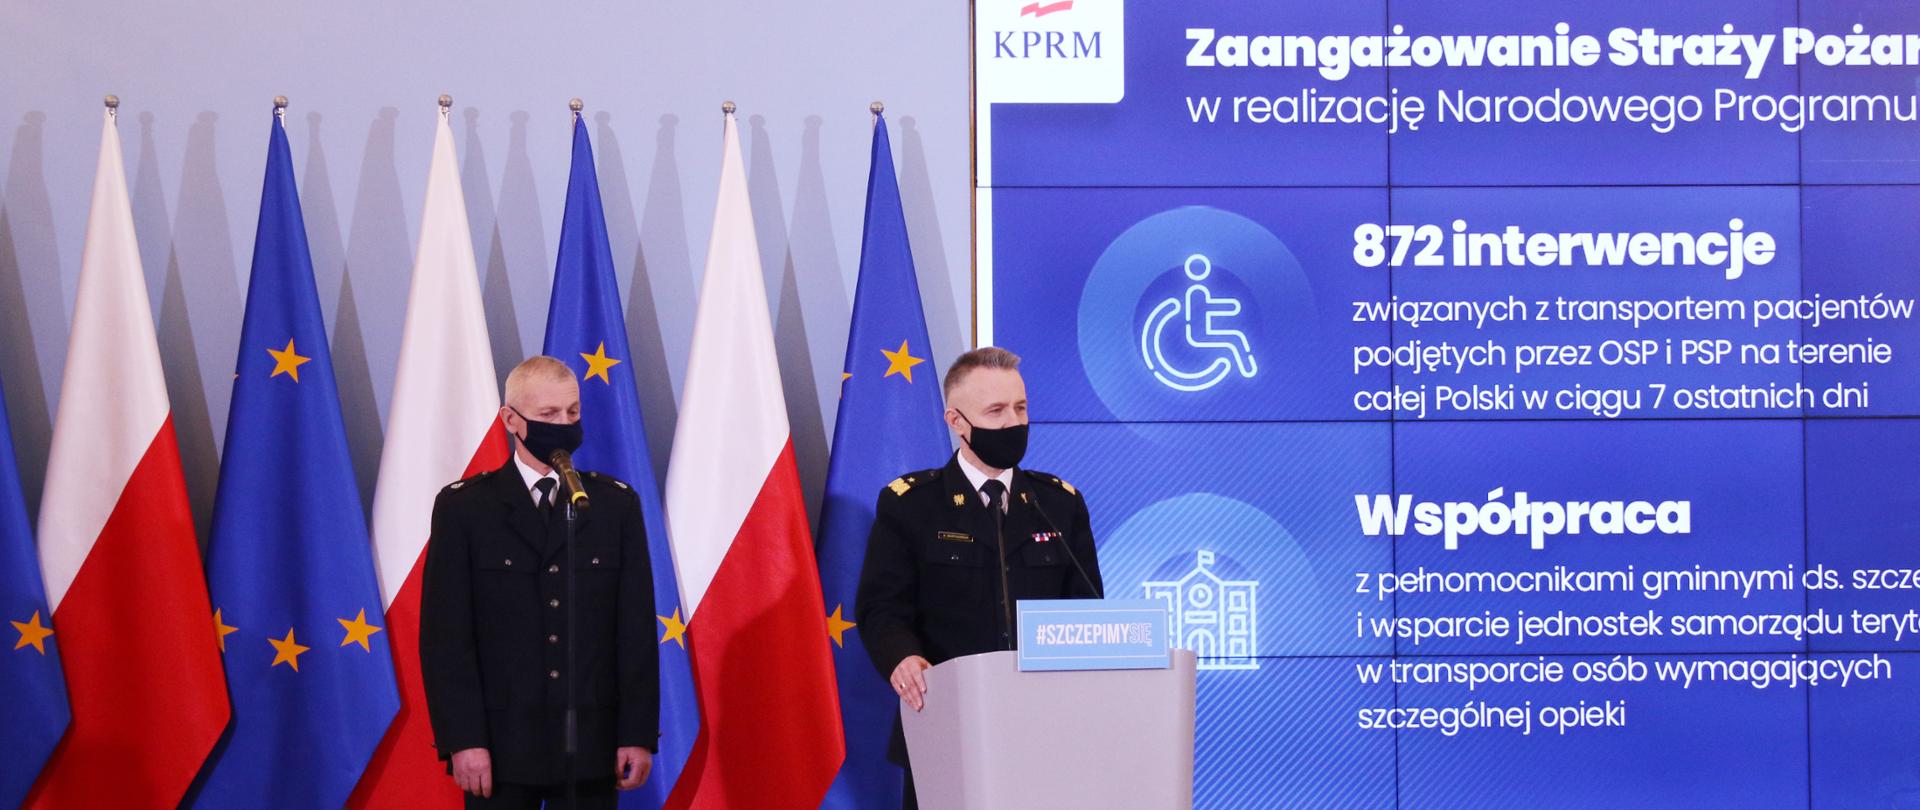 Na zdjęciu dwóch strażaków w umundurowaniu wyjściowym jeden z OSP drugi z PSP. Obaj na twarzy mają maseczki. Za ich plecami ustawione są naprzemiennie flagi Polski i Unii Europejskiej. Obok ściana wizyjna, na której wyświetlane są informacje związane z konferencją.